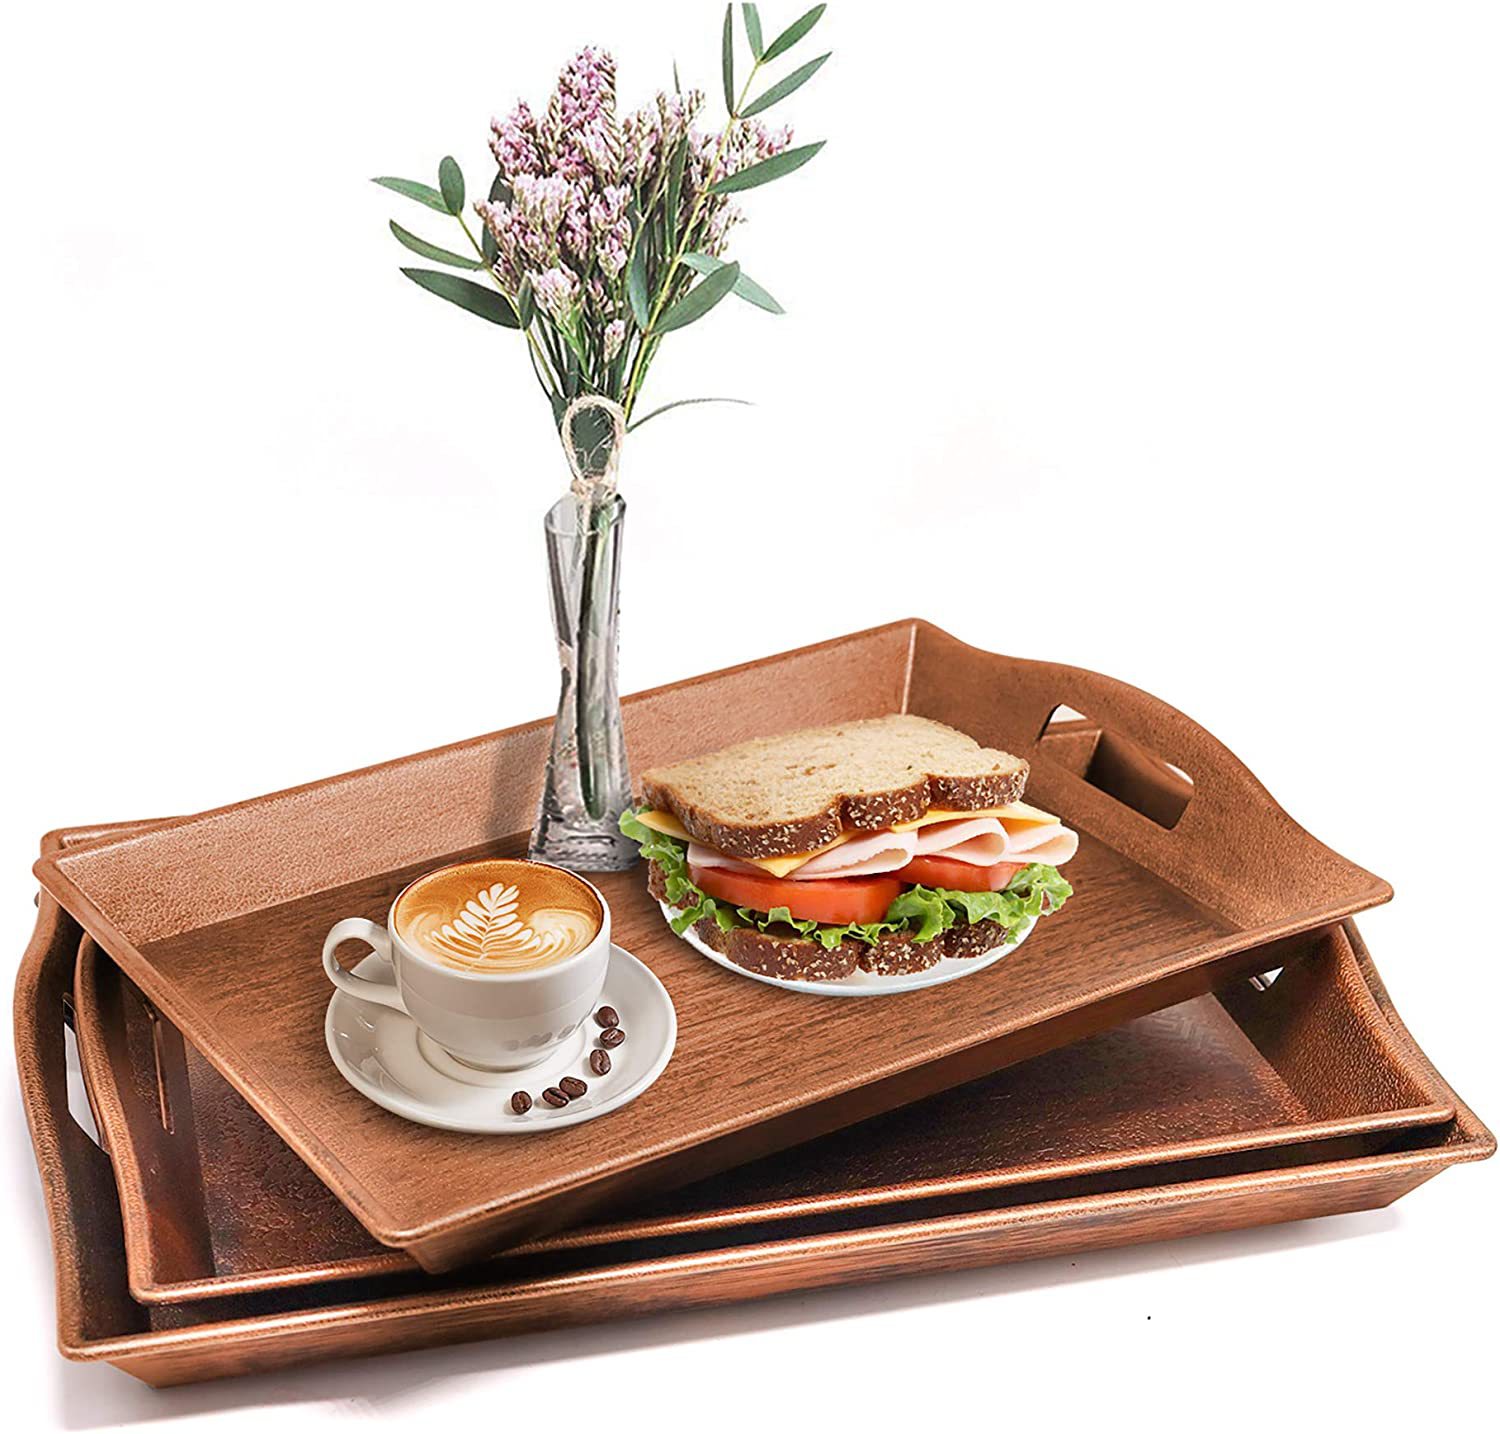 Customizable Bamboo Tea Walnut Tray Rectangular Bamboo Tray Simple Home Hotel Restaurant Tea Set Tea Tray